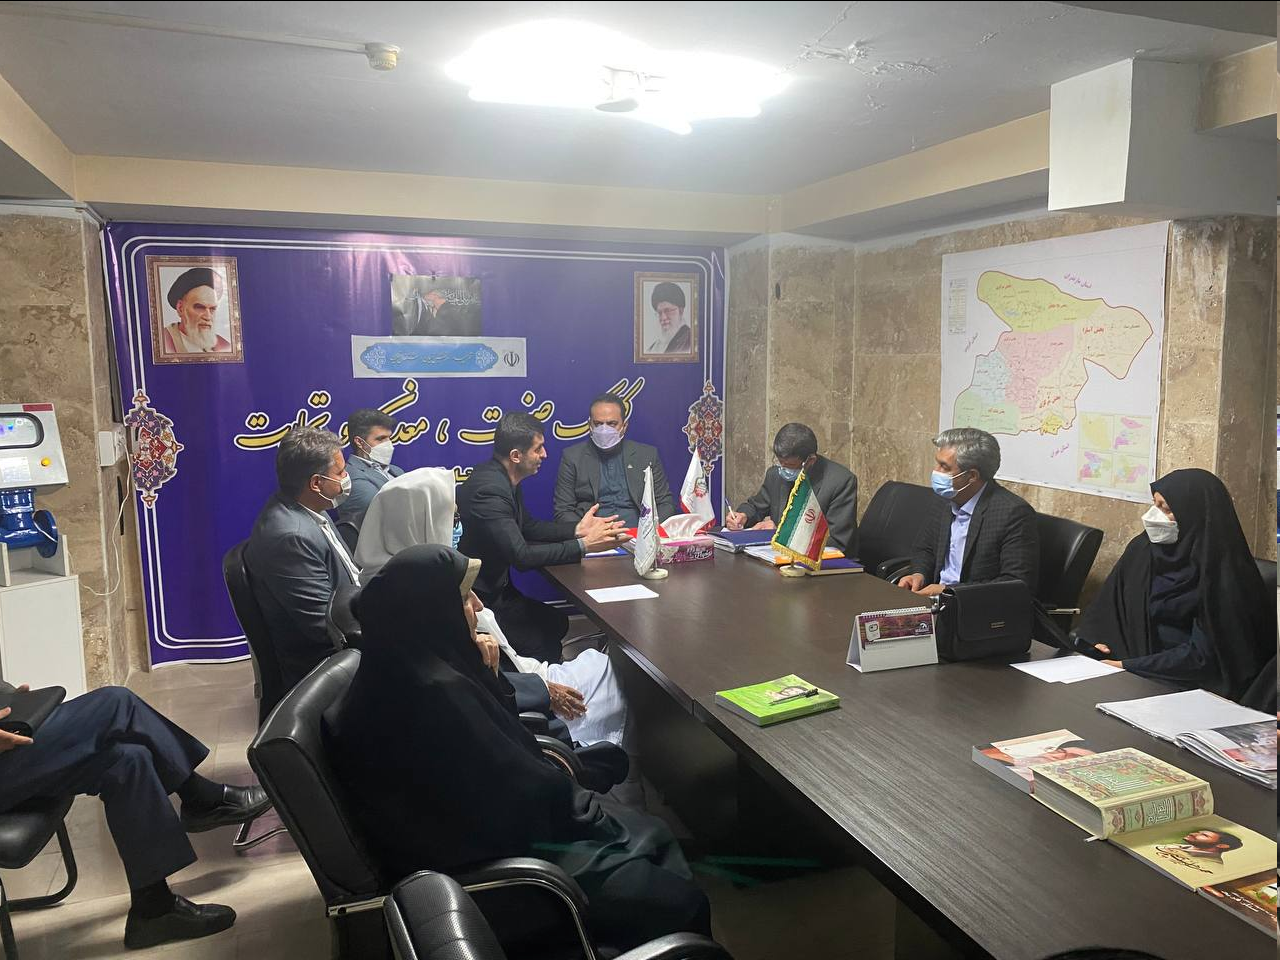 دیدار شماری از فعالین سیاسی کشور با مردم با فرهنگ و حماسه ساز استان البرز